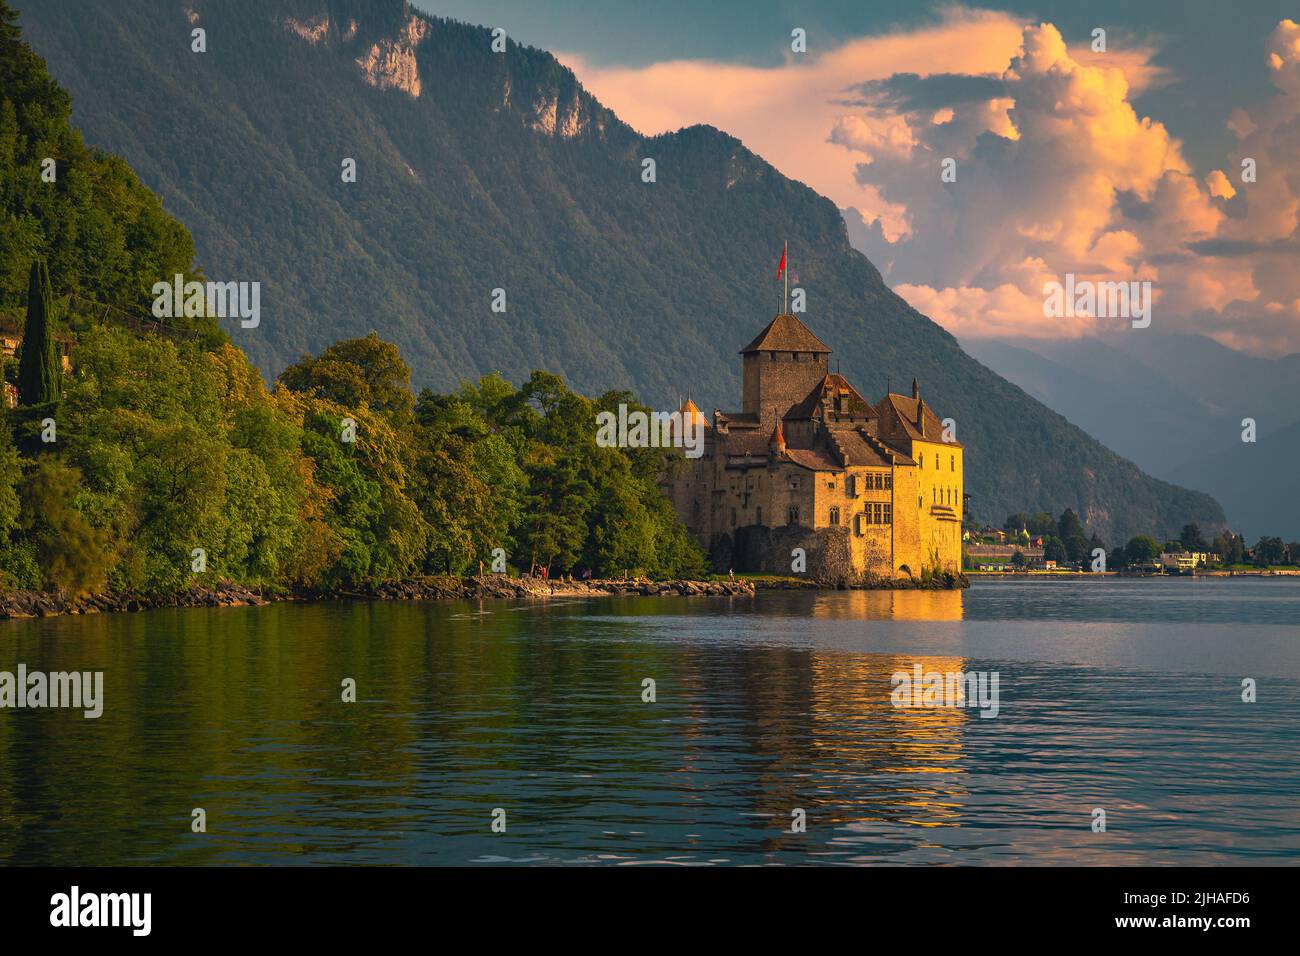 Destinazione turistica e turistica svizzera, castello di Chillon sulla riva del lago di Ginevra al tramonto, Montreux, Svizzera, Europa Foto Stock